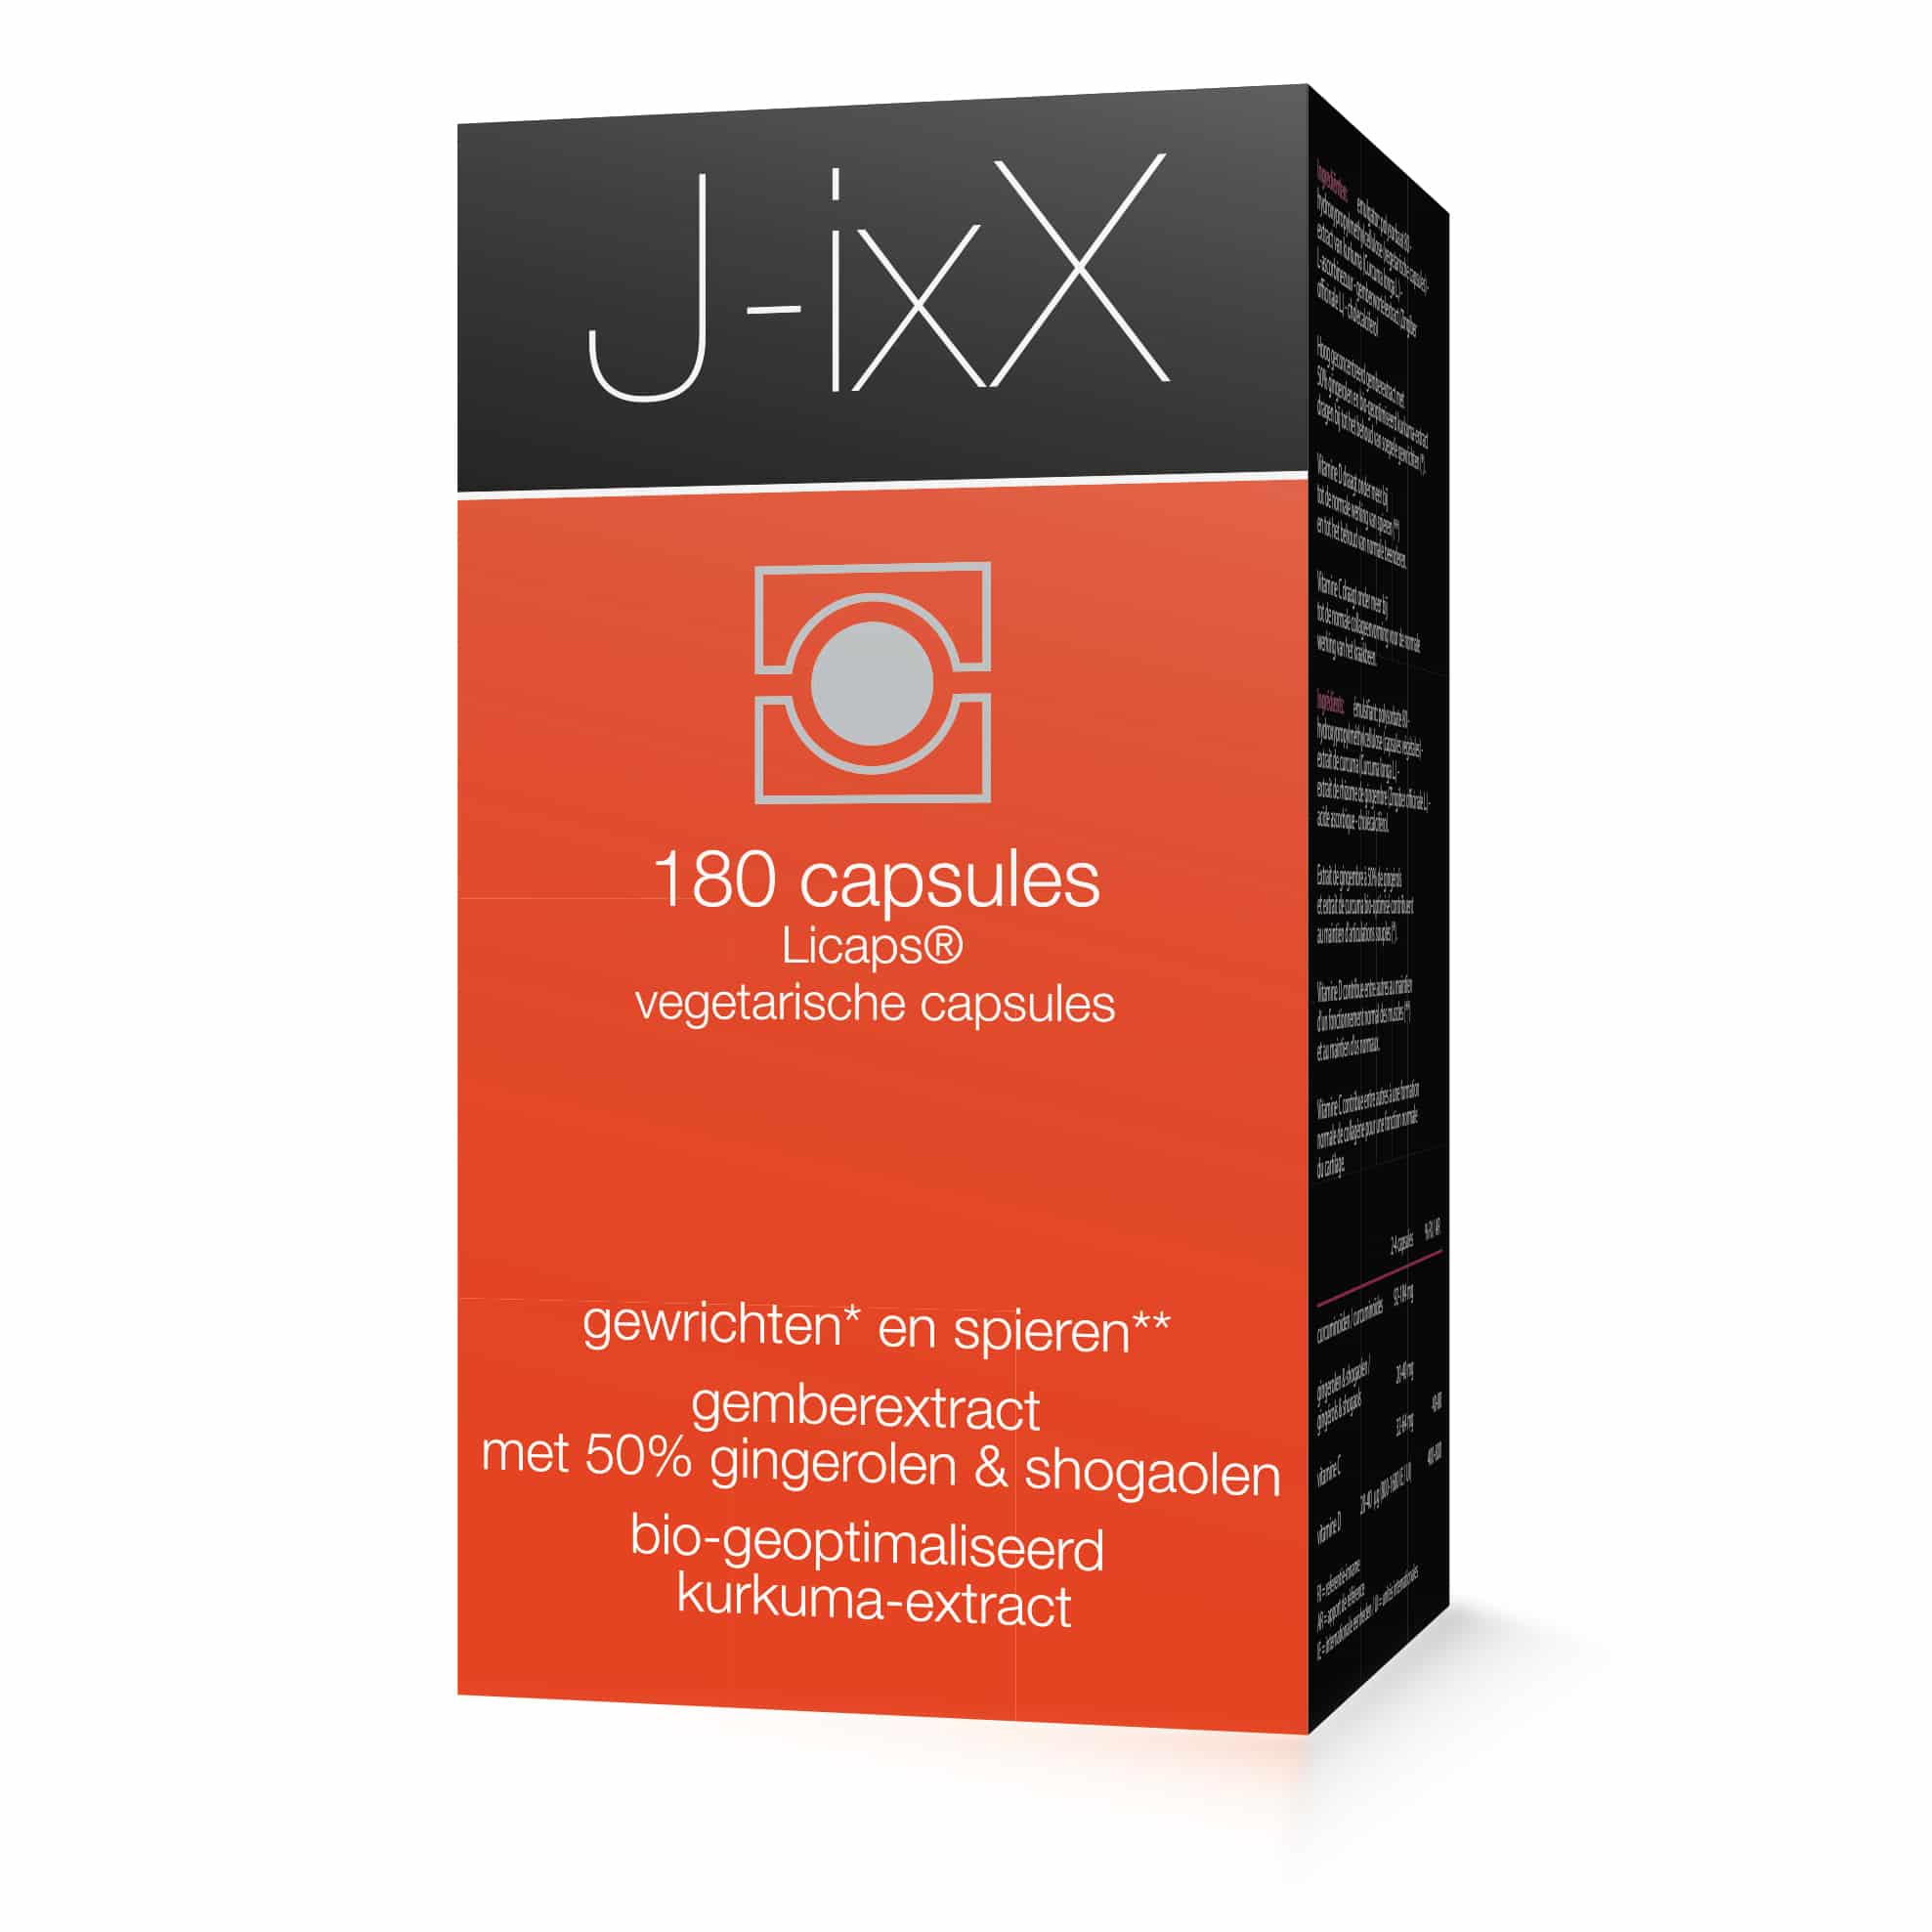 J-ixX